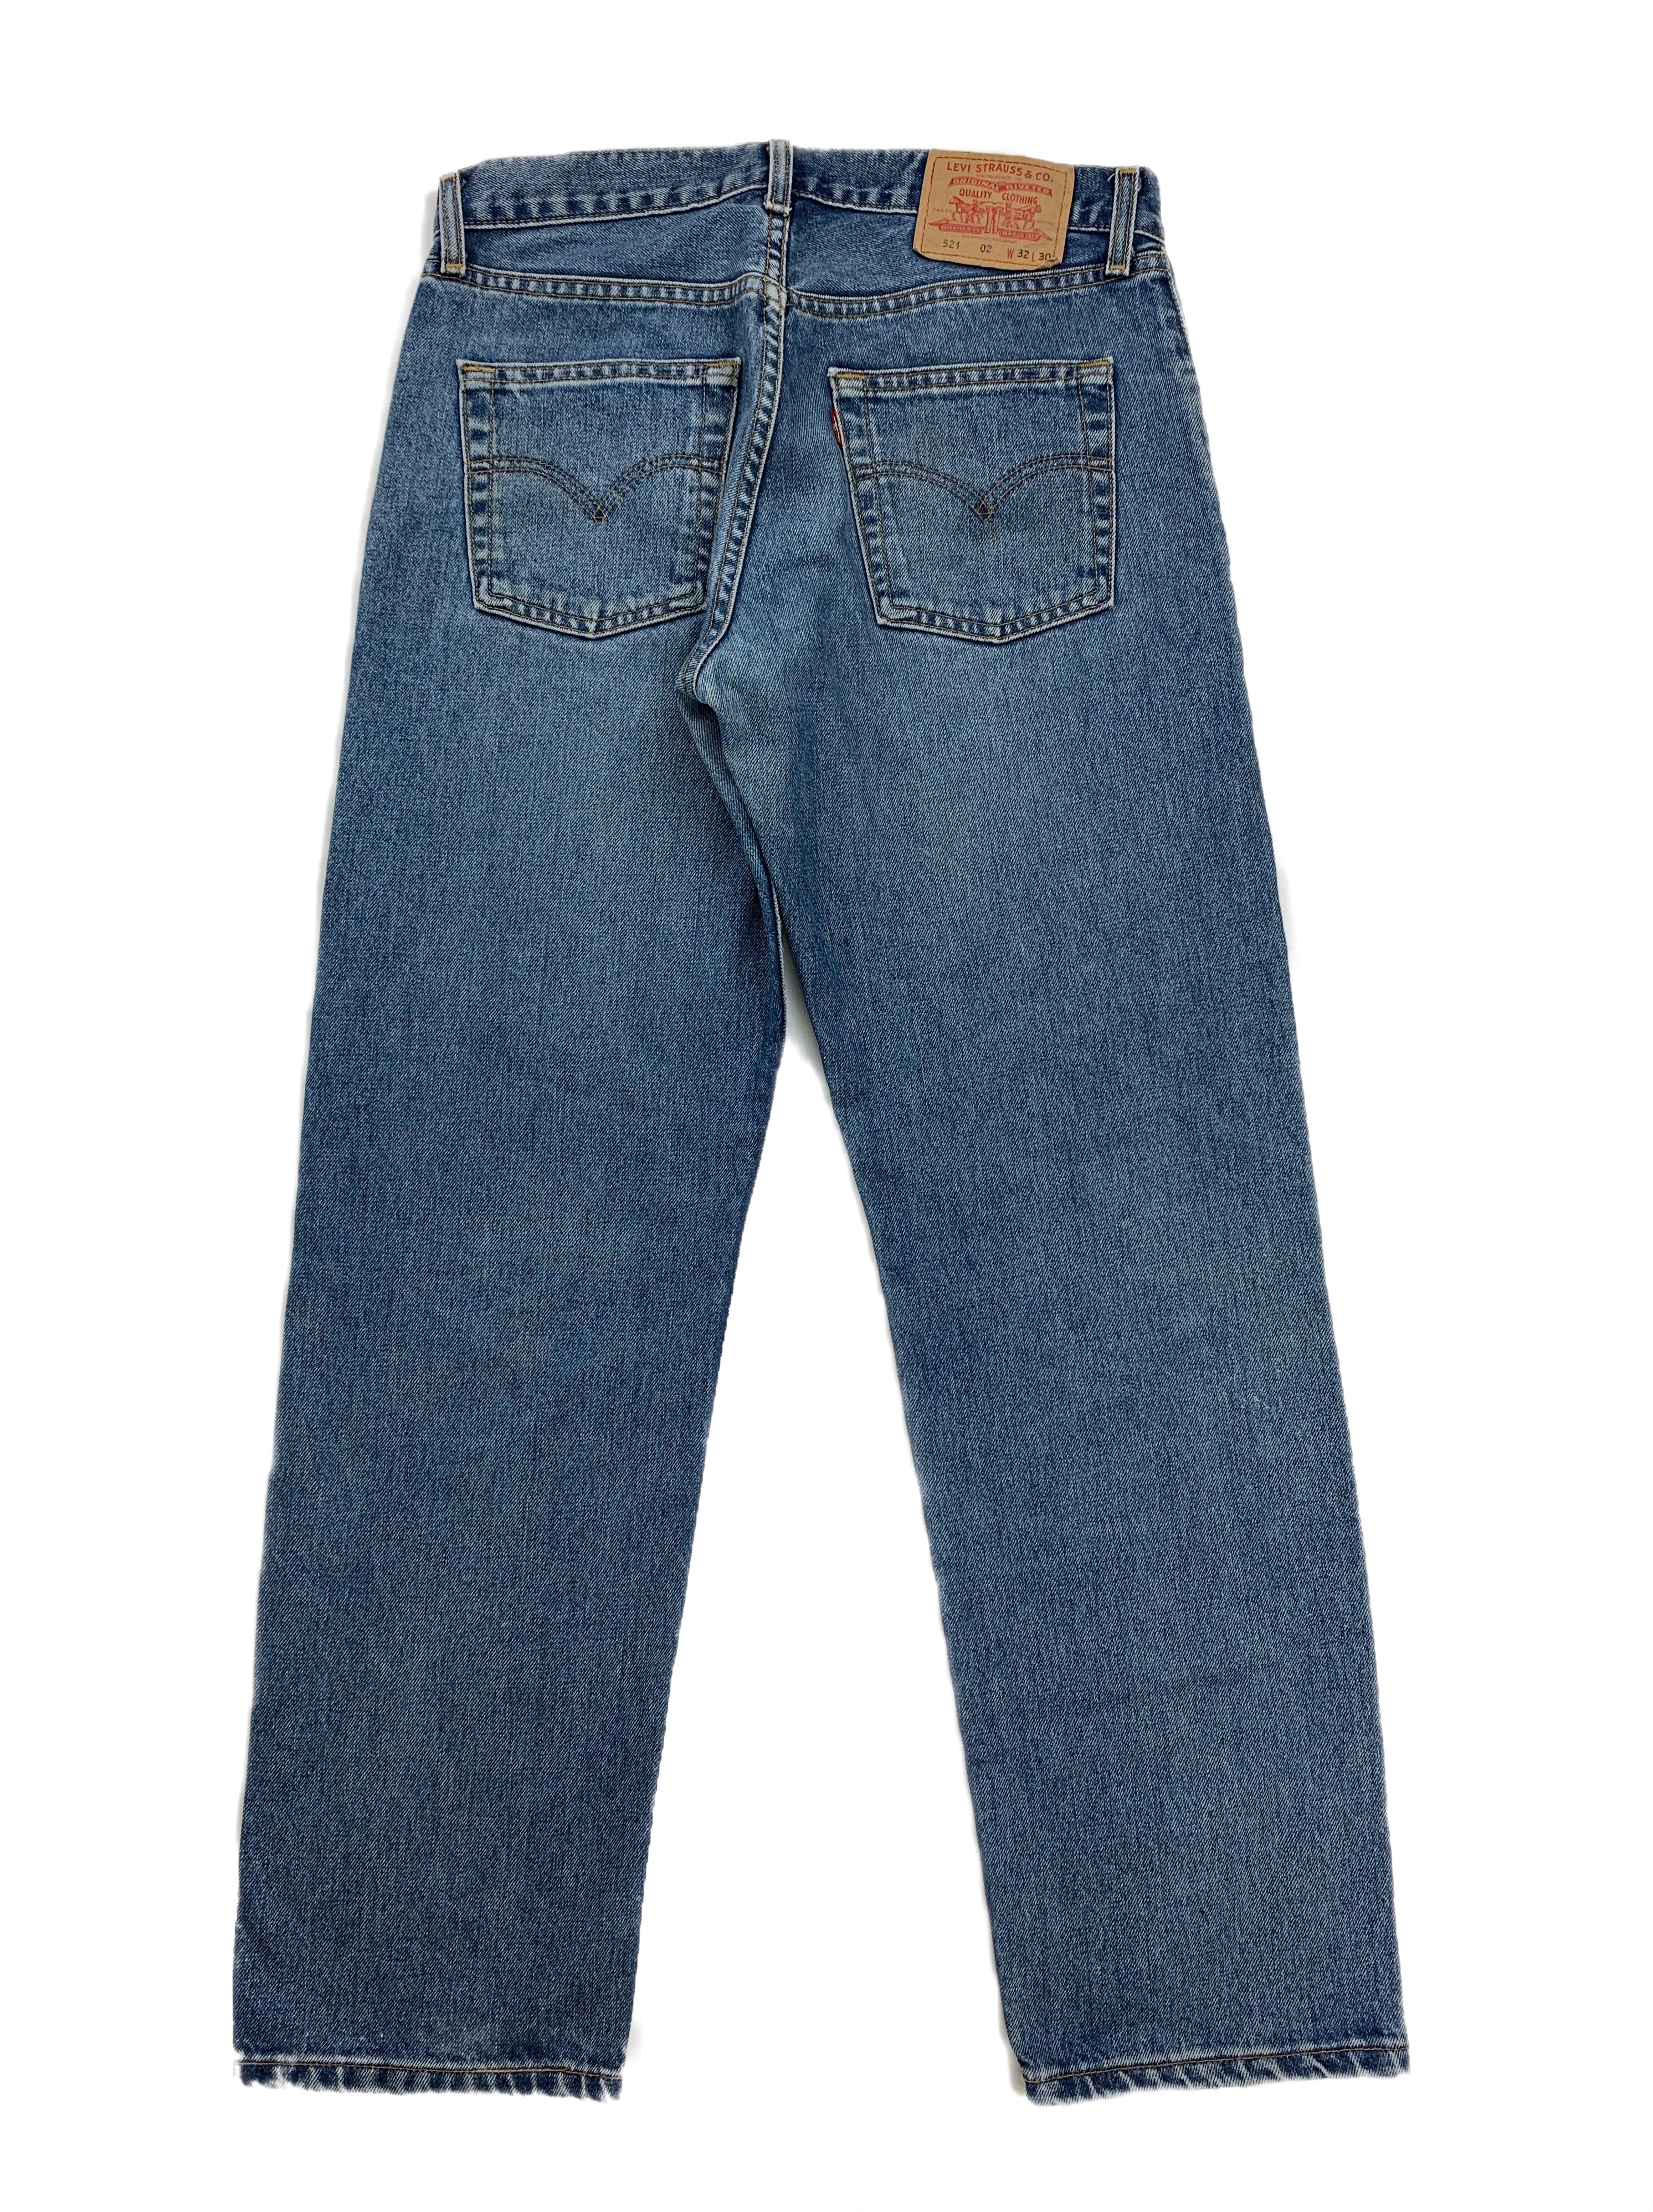 Rare Vintage Levi's 521 Jeans - Restorecph